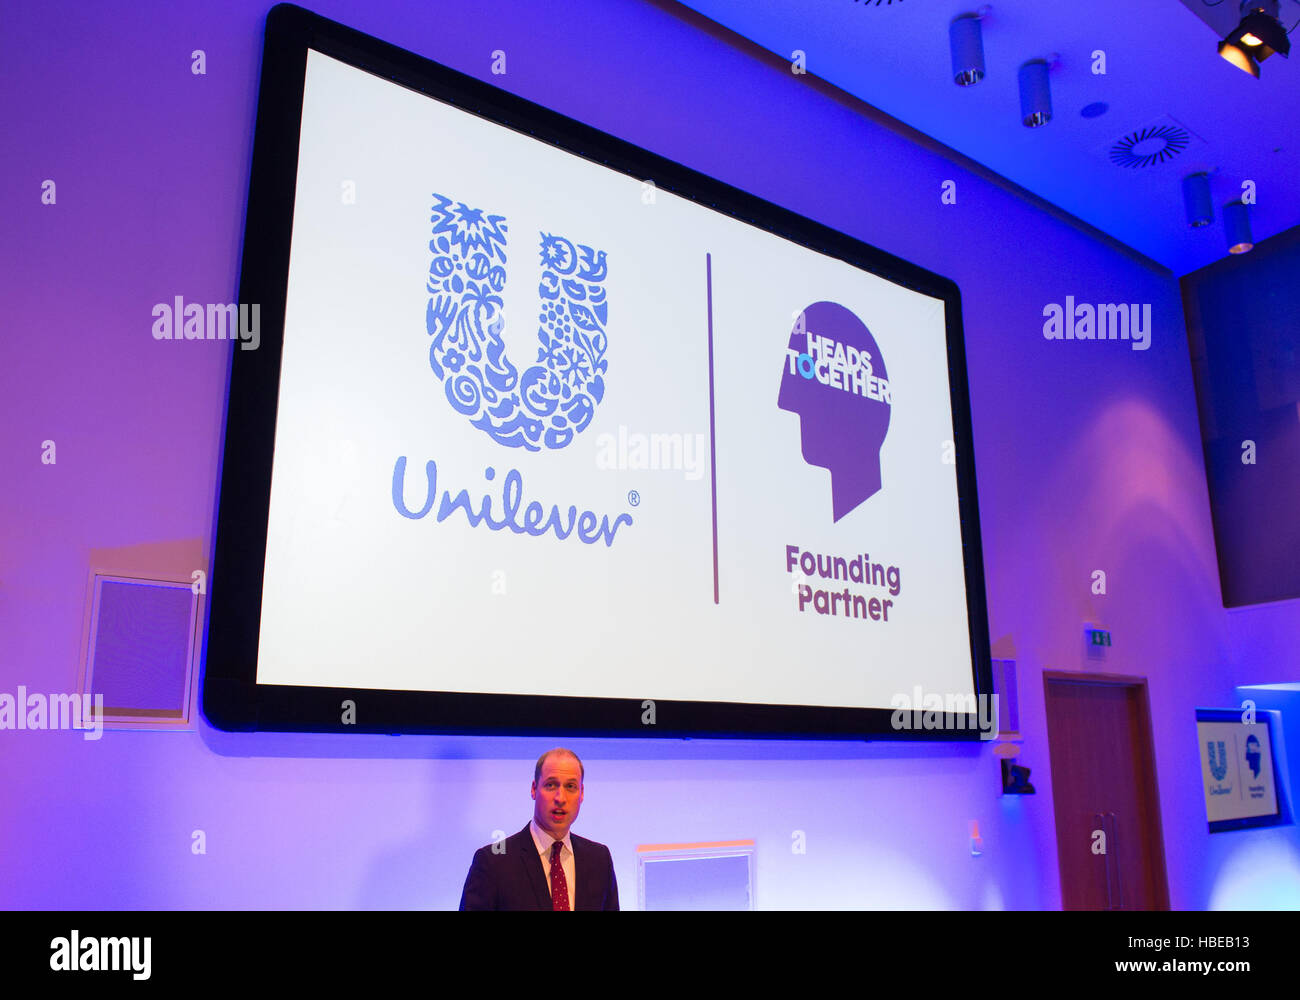 Il Duca di Cambridge parla durante un briefing con il Business Leader per discutere l'importanza del benessere sul luogo di lavoro, come parte delle teste insieme campagna, presso Unilever, a Londra. Foto Stock